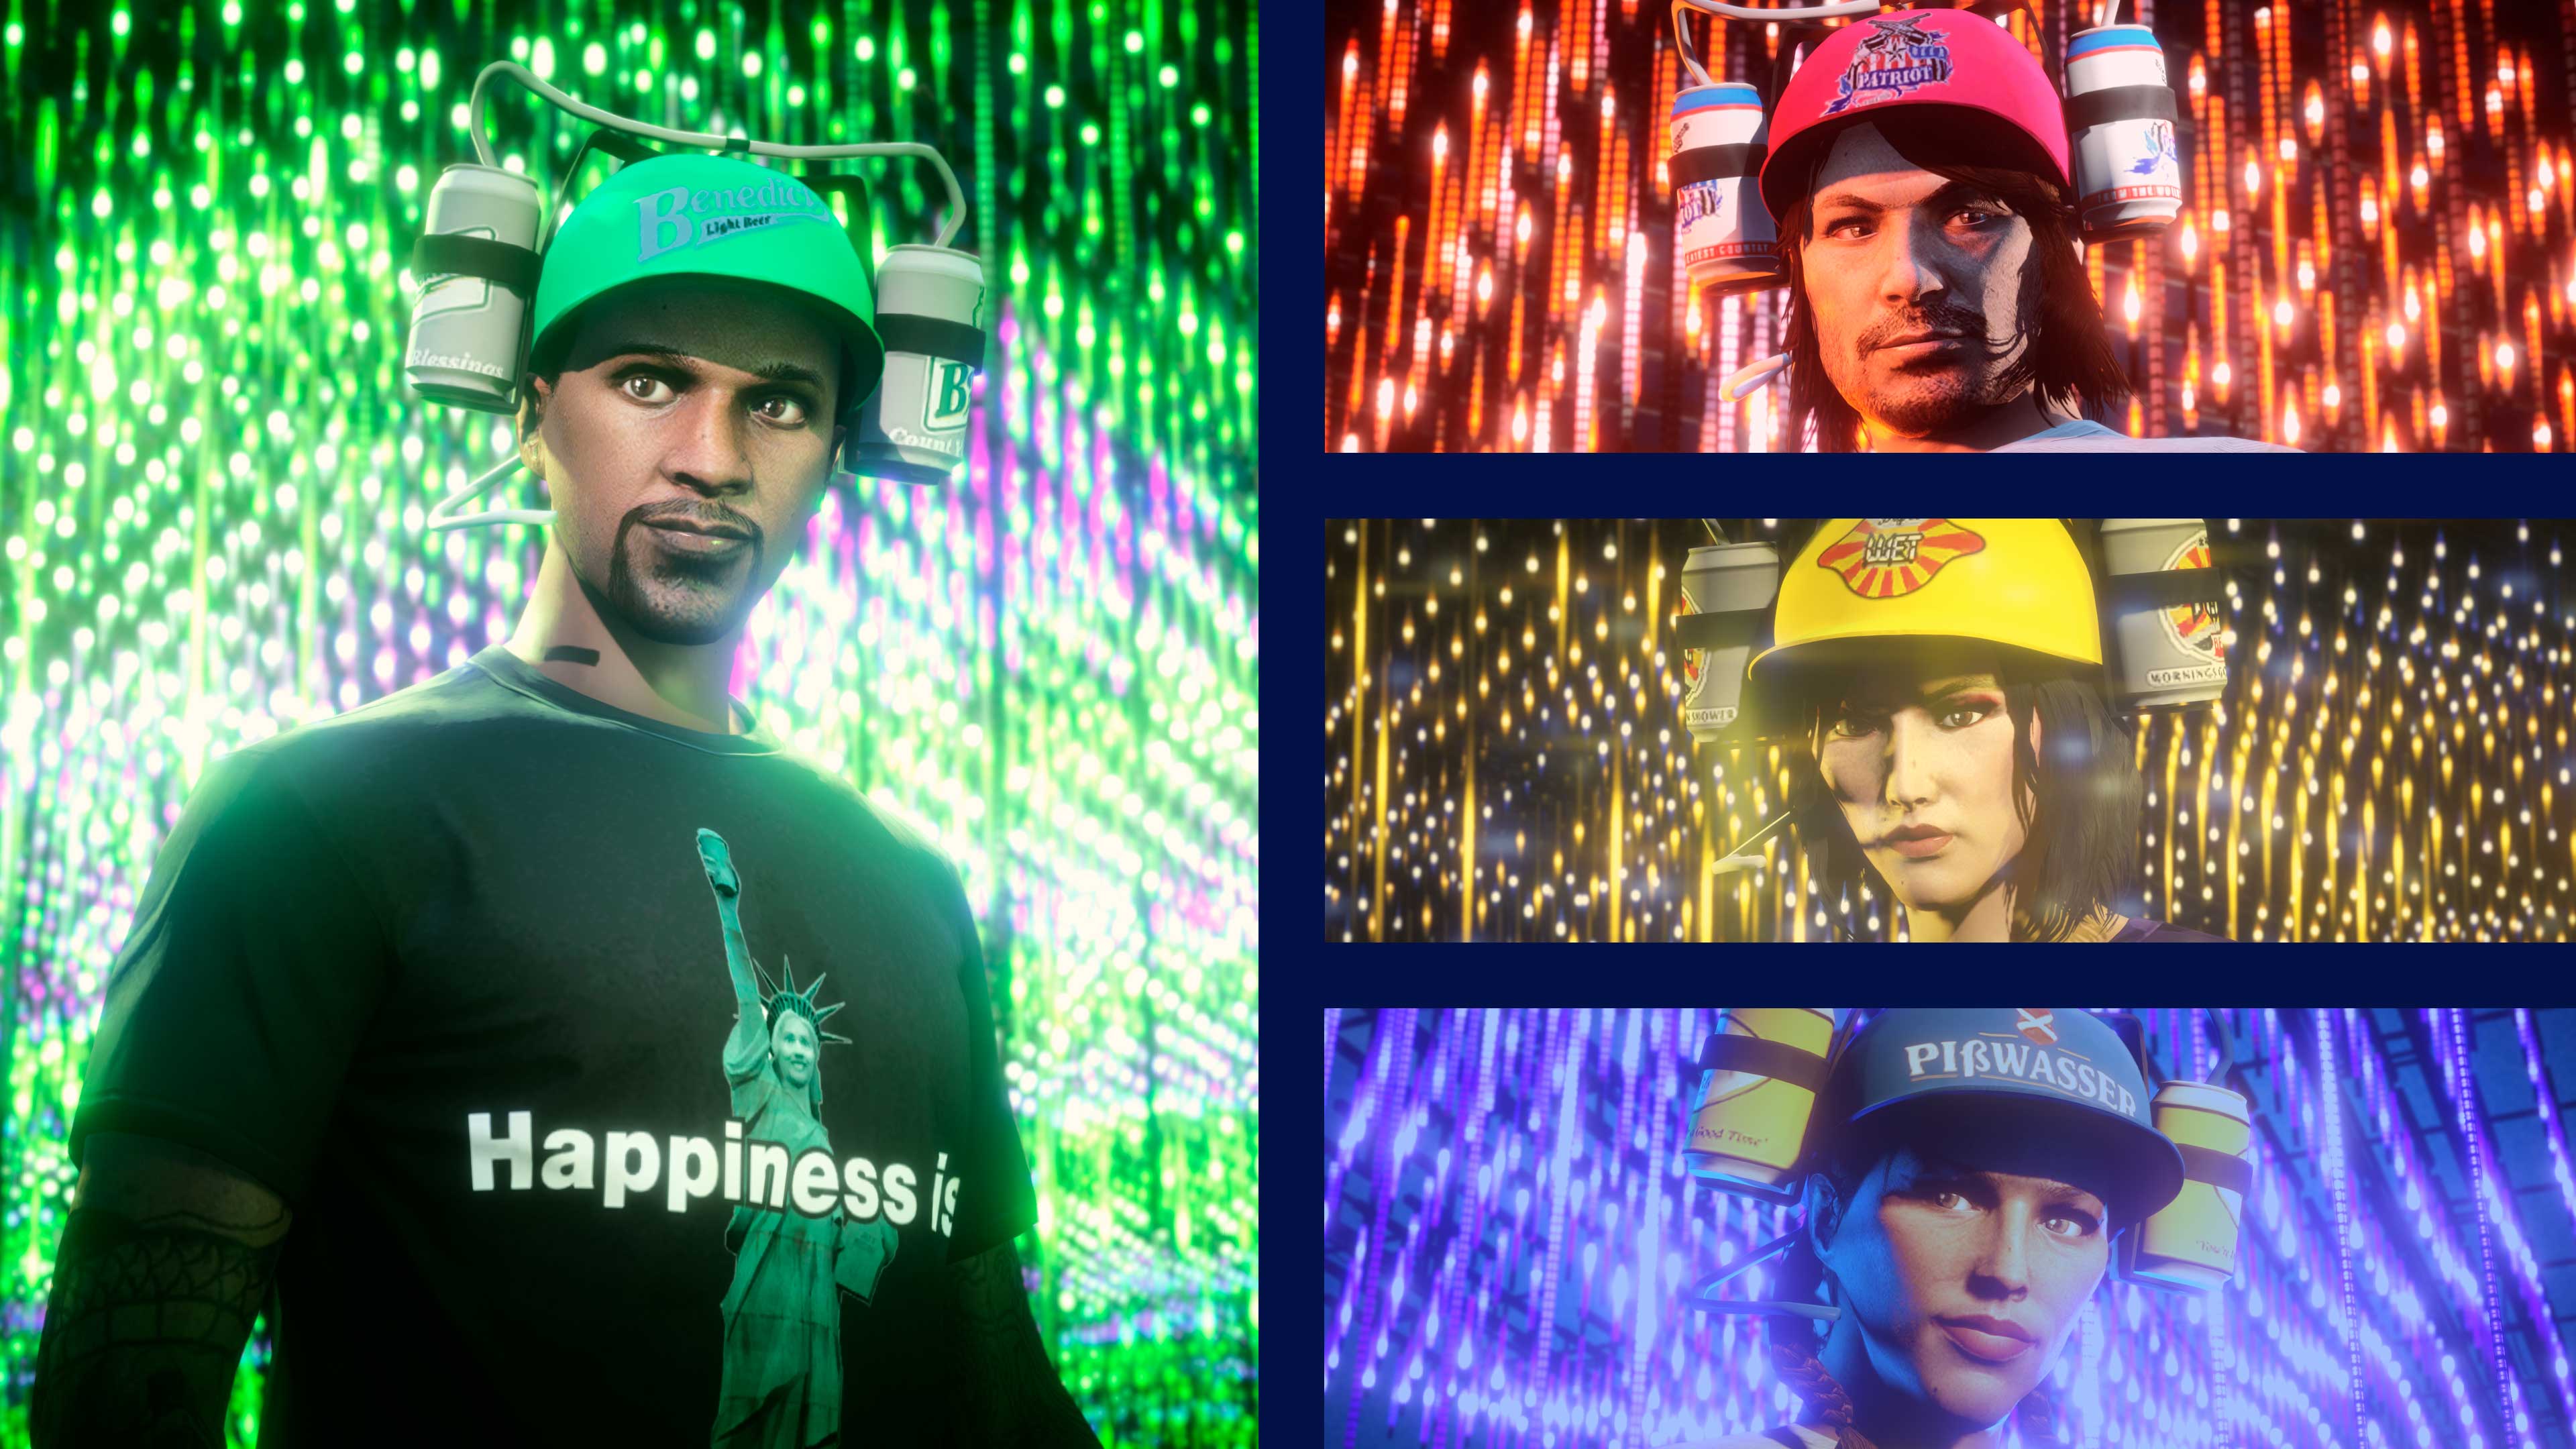 immagini di personaggi di GTA Online con cappelli da birra